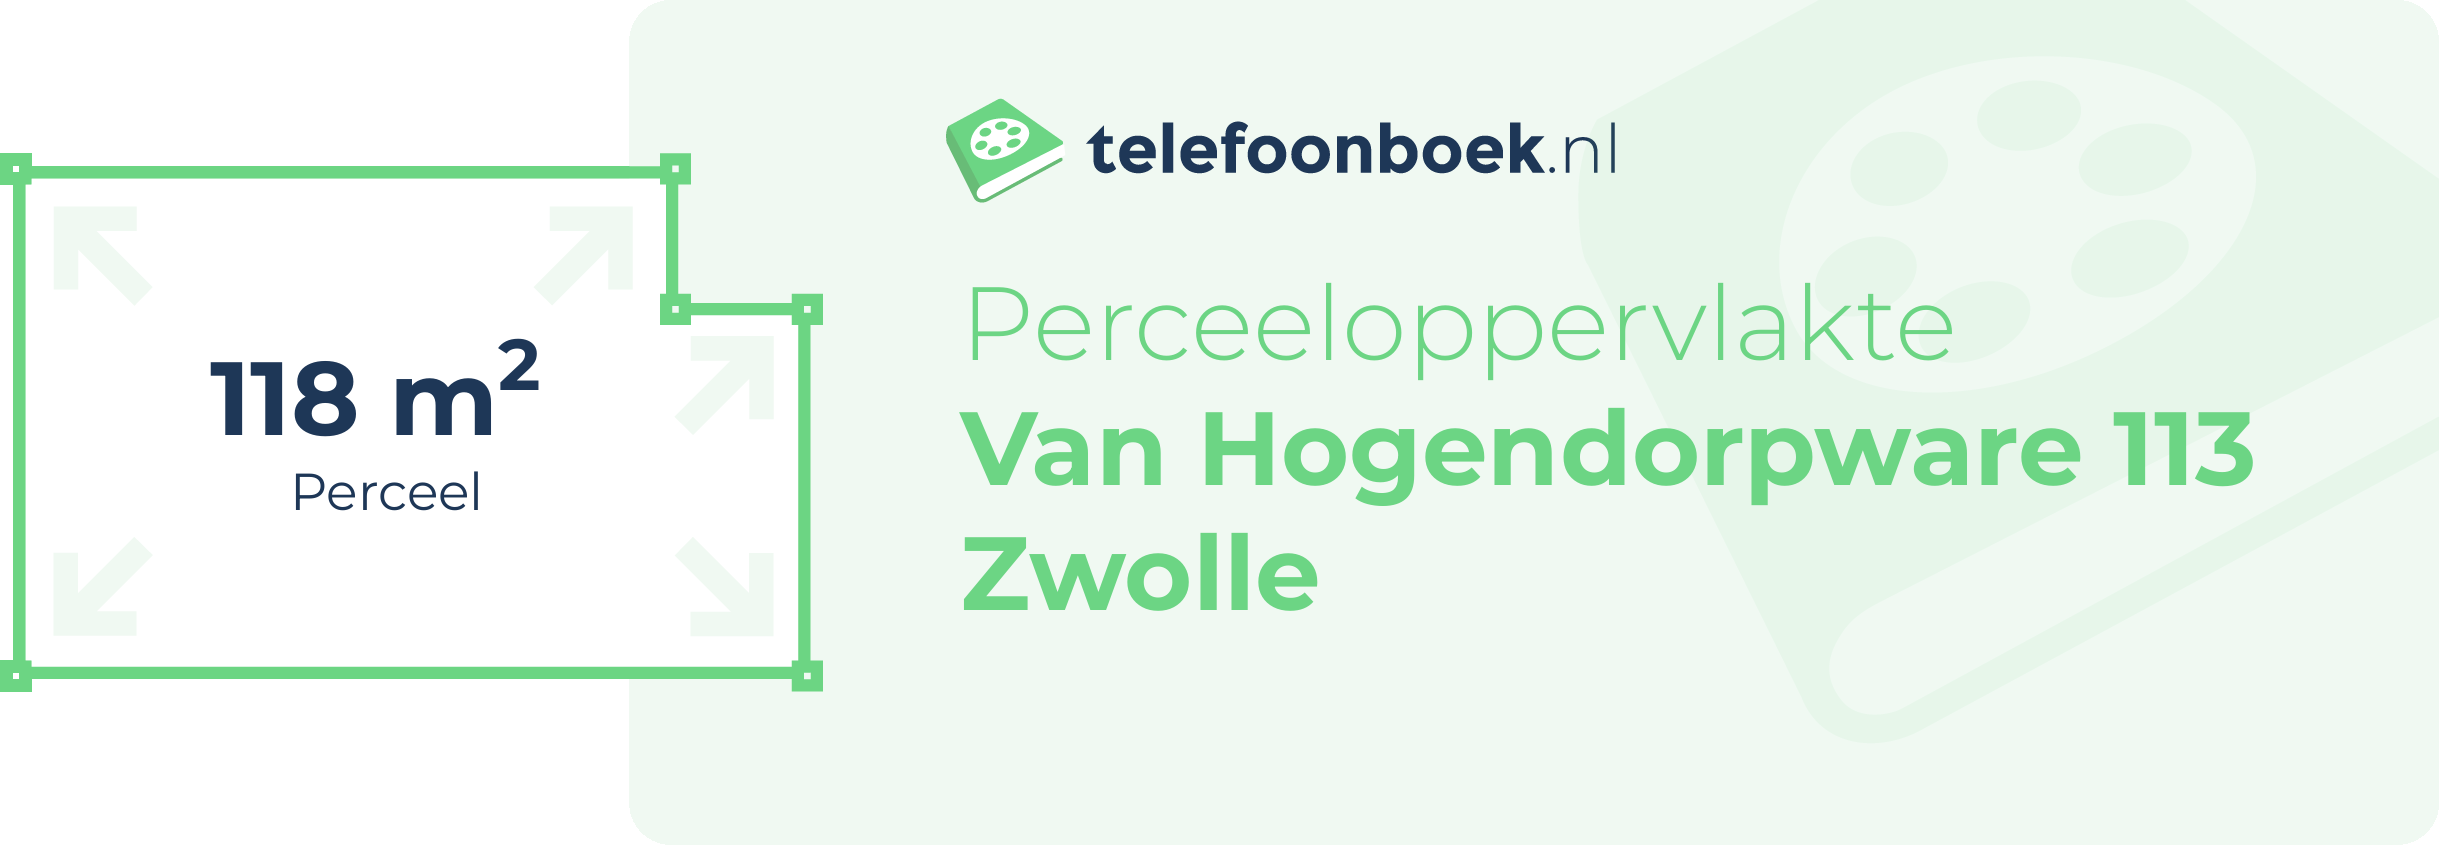 Perceeloppervlakte Van Hogendorpware 113 Zwolle